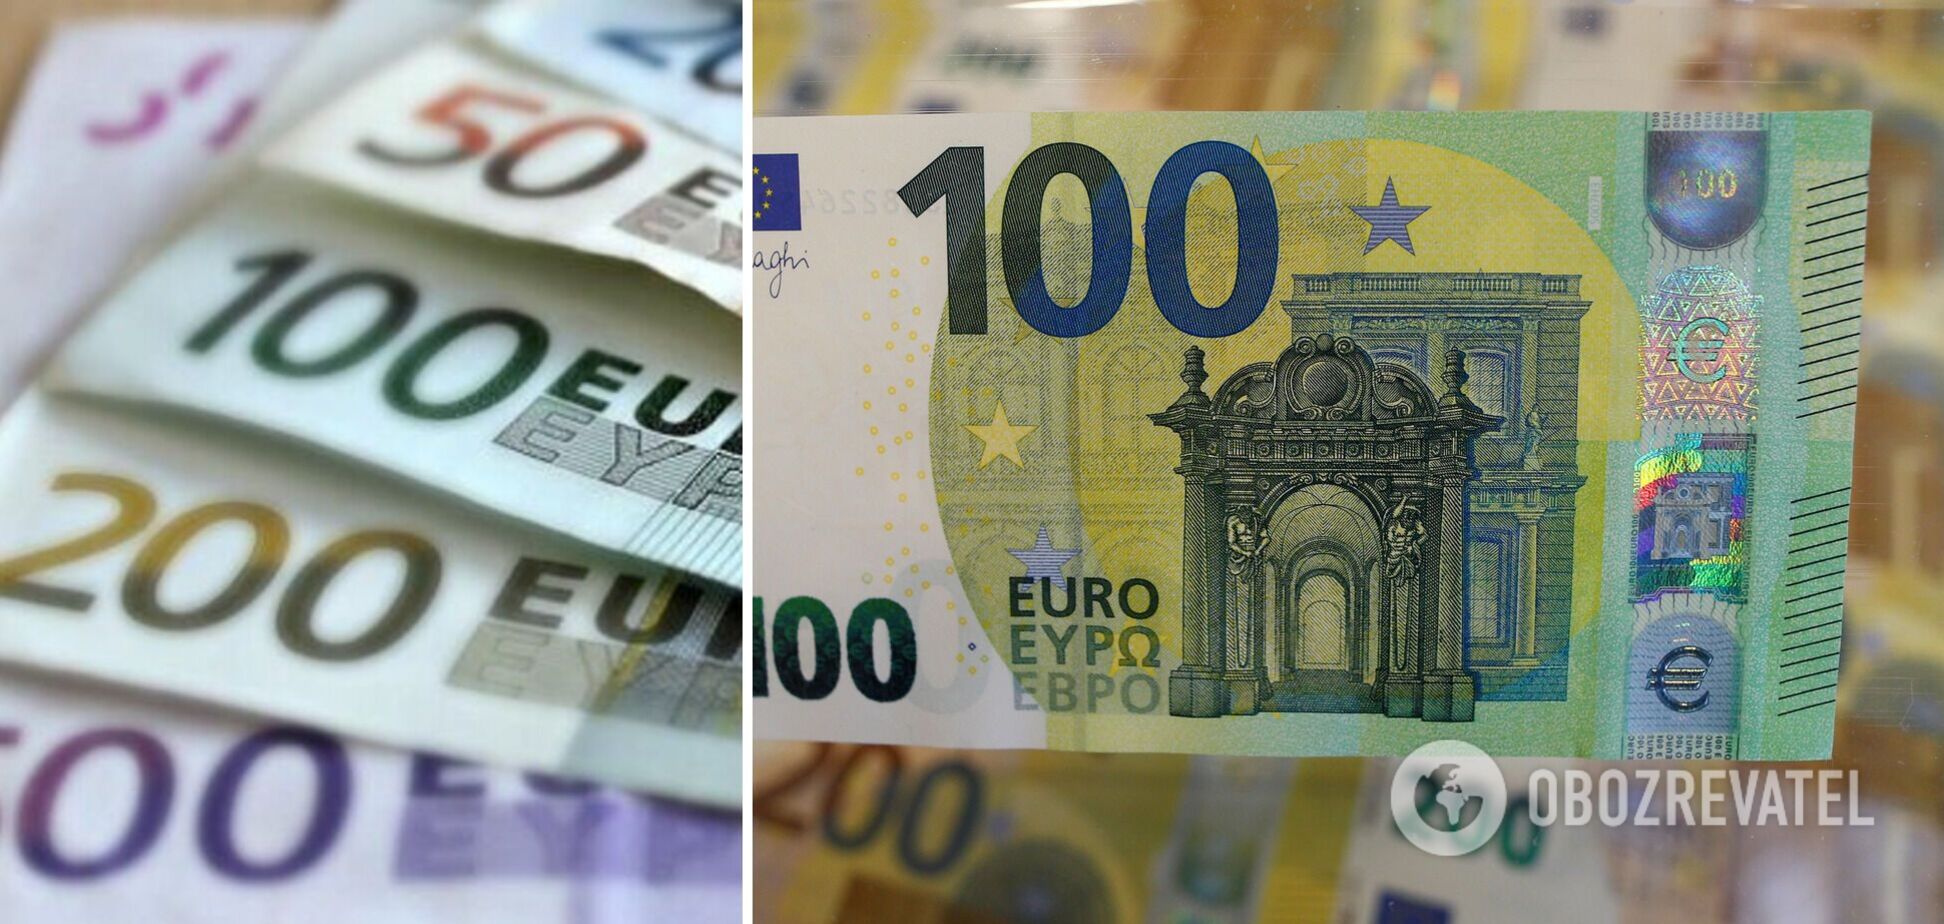 Украинцы могут получить фальшивые евро